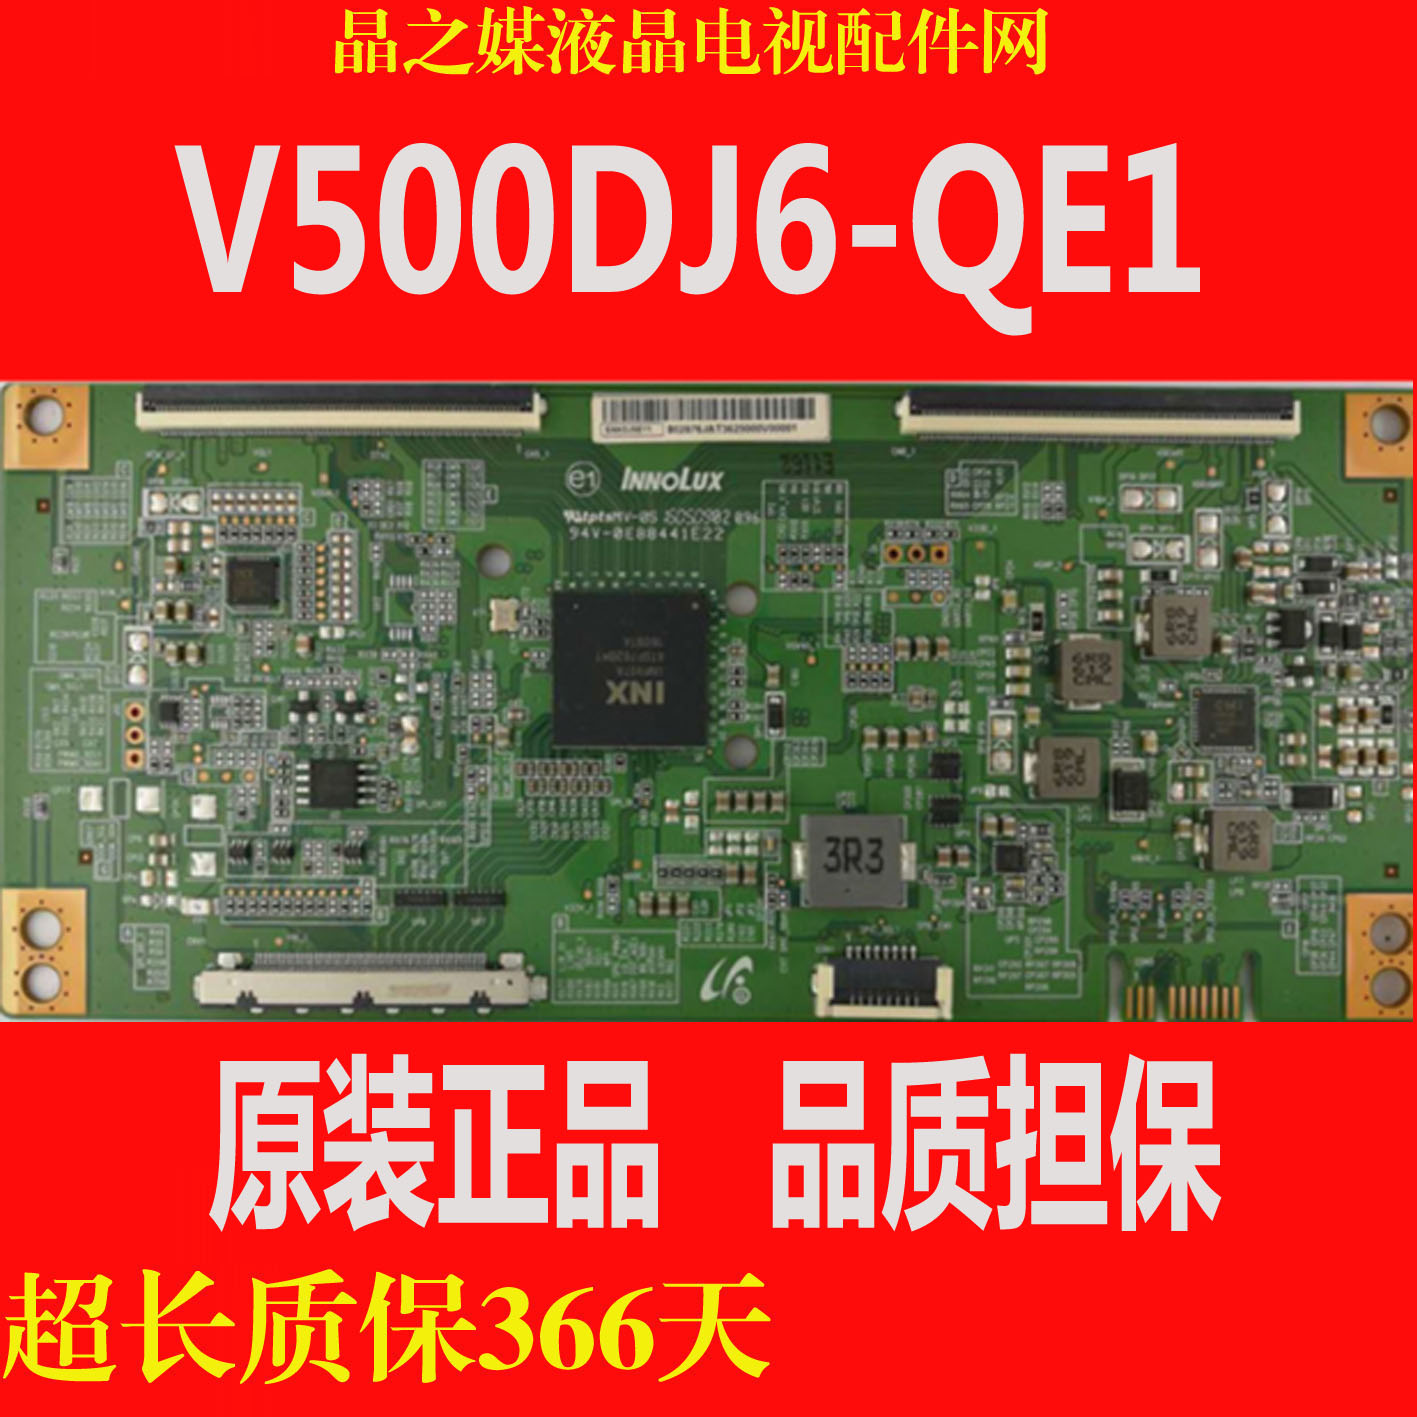 全新原装 奇美 V500DJ6-QE1 V500DJ5-QE1 4K 逻辑板 测试OK 现货